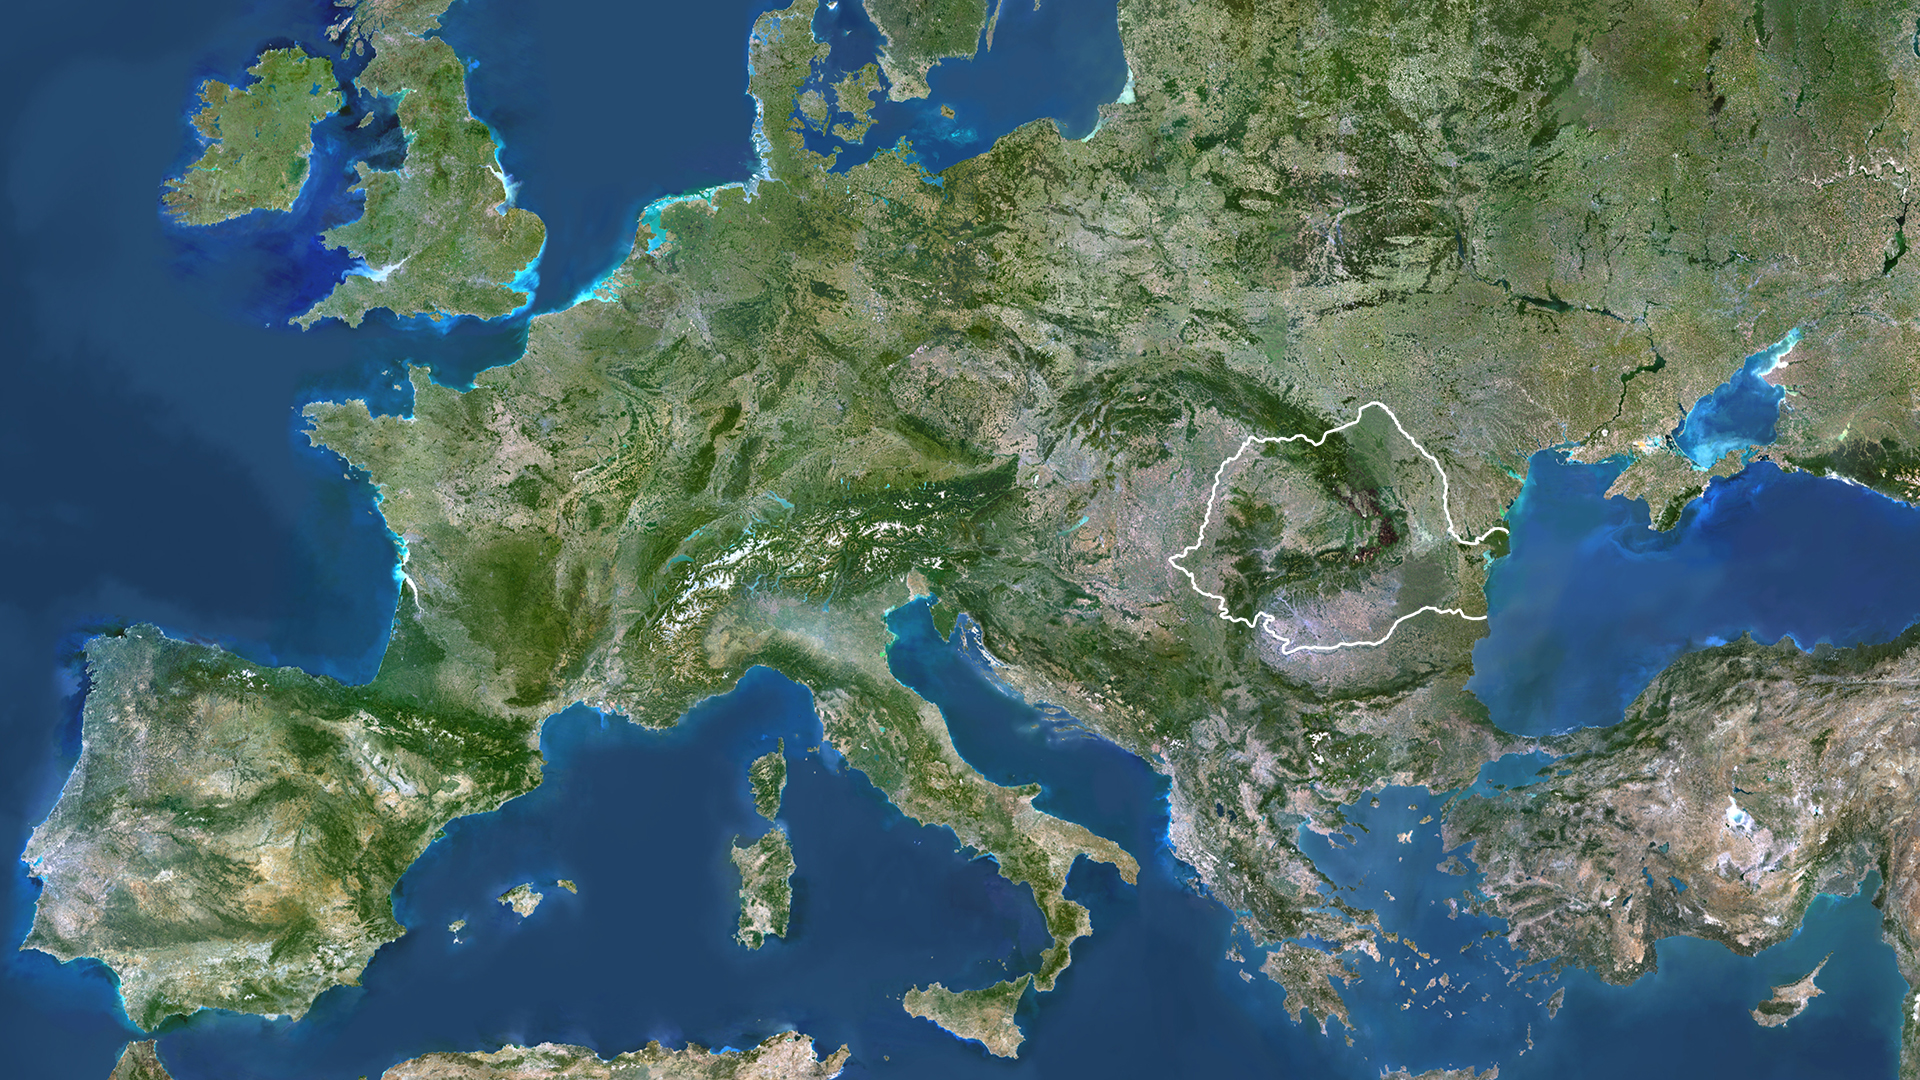 Europe, True Colour Satellite Image